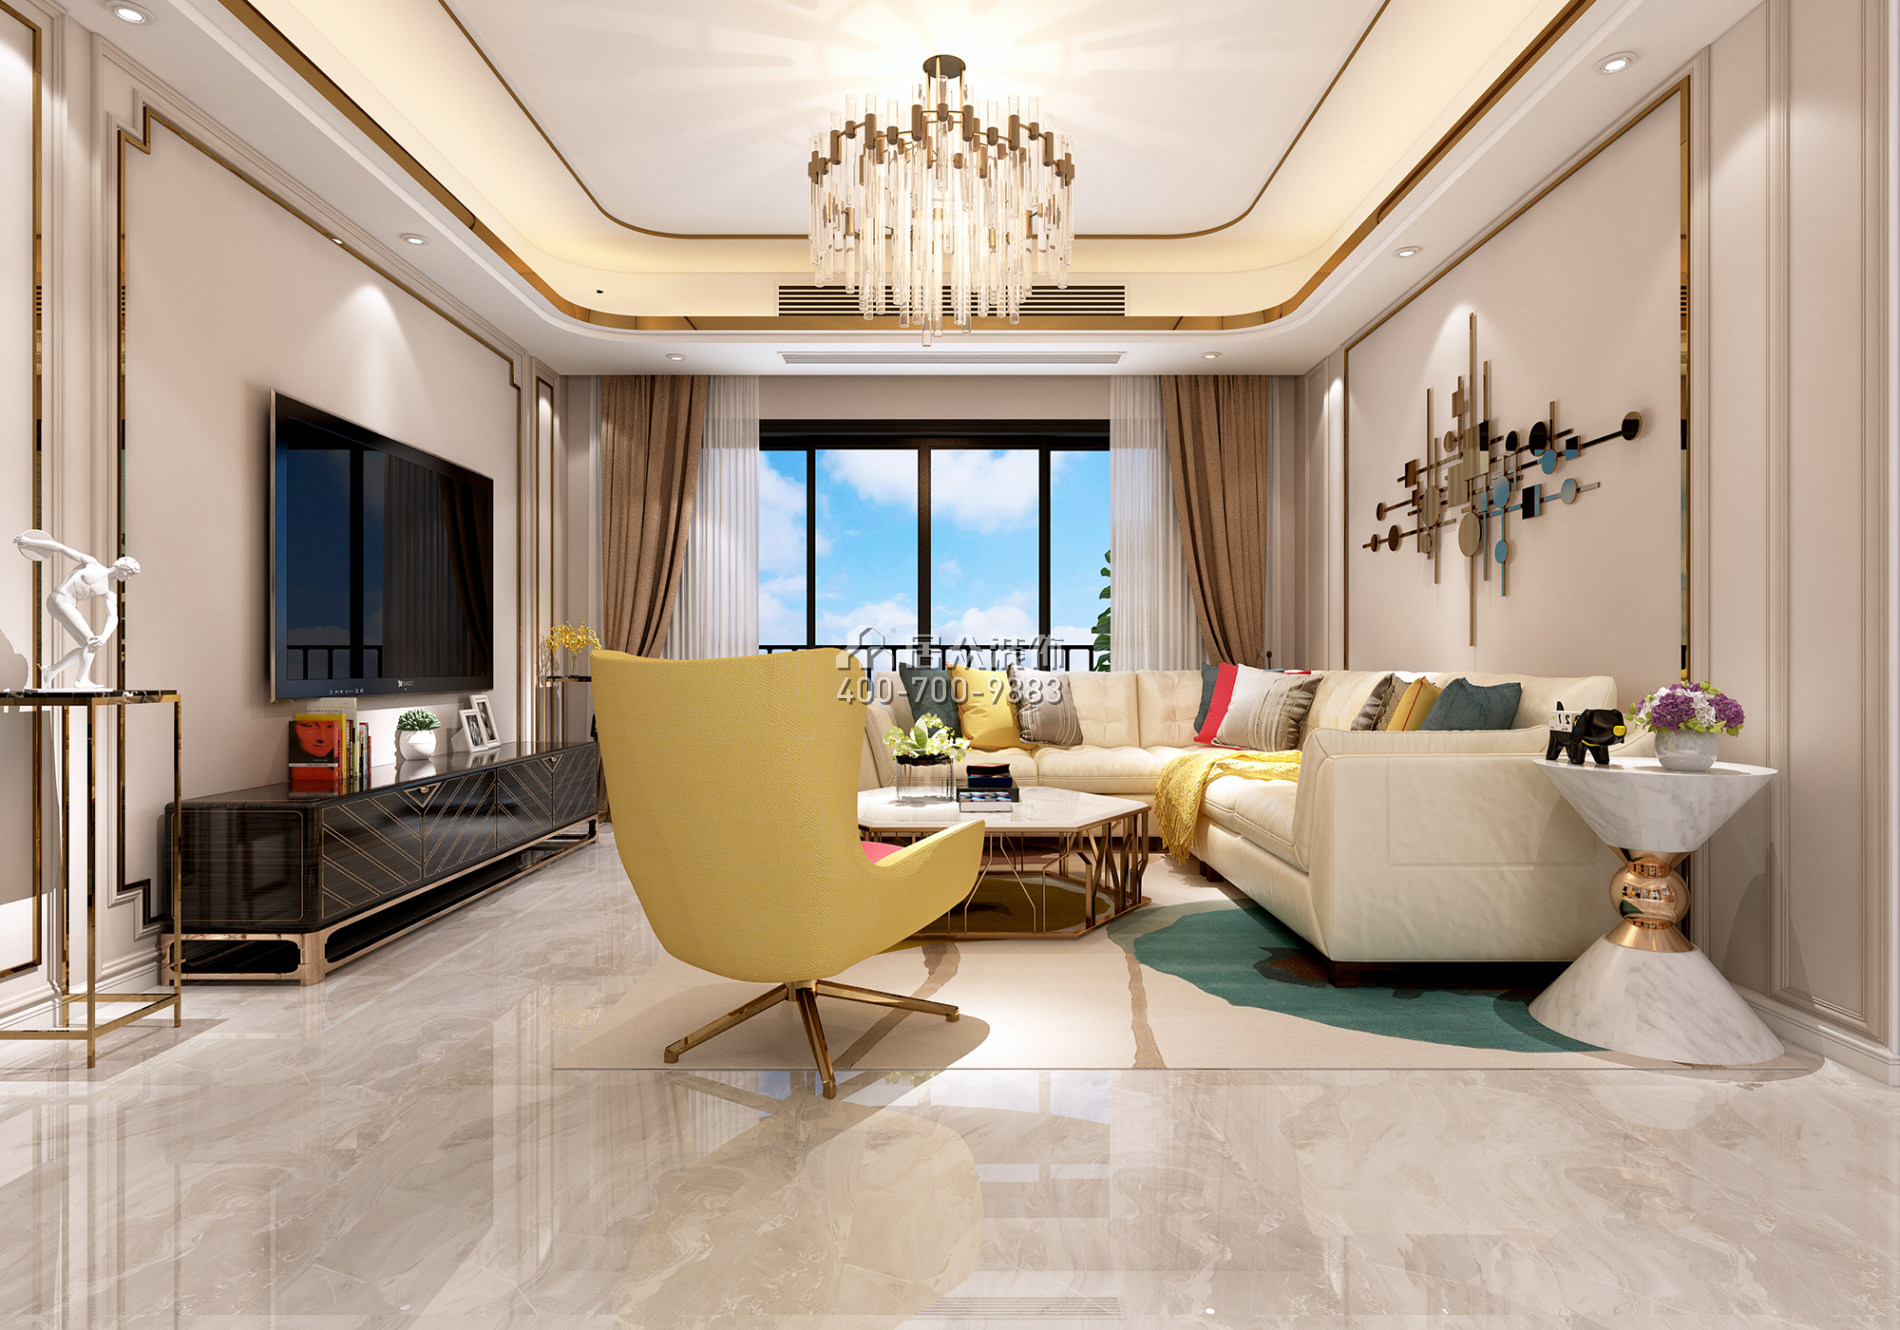 錦盛恒富得145平方米現代簡約風格平層戶型客廳裝修效果圖